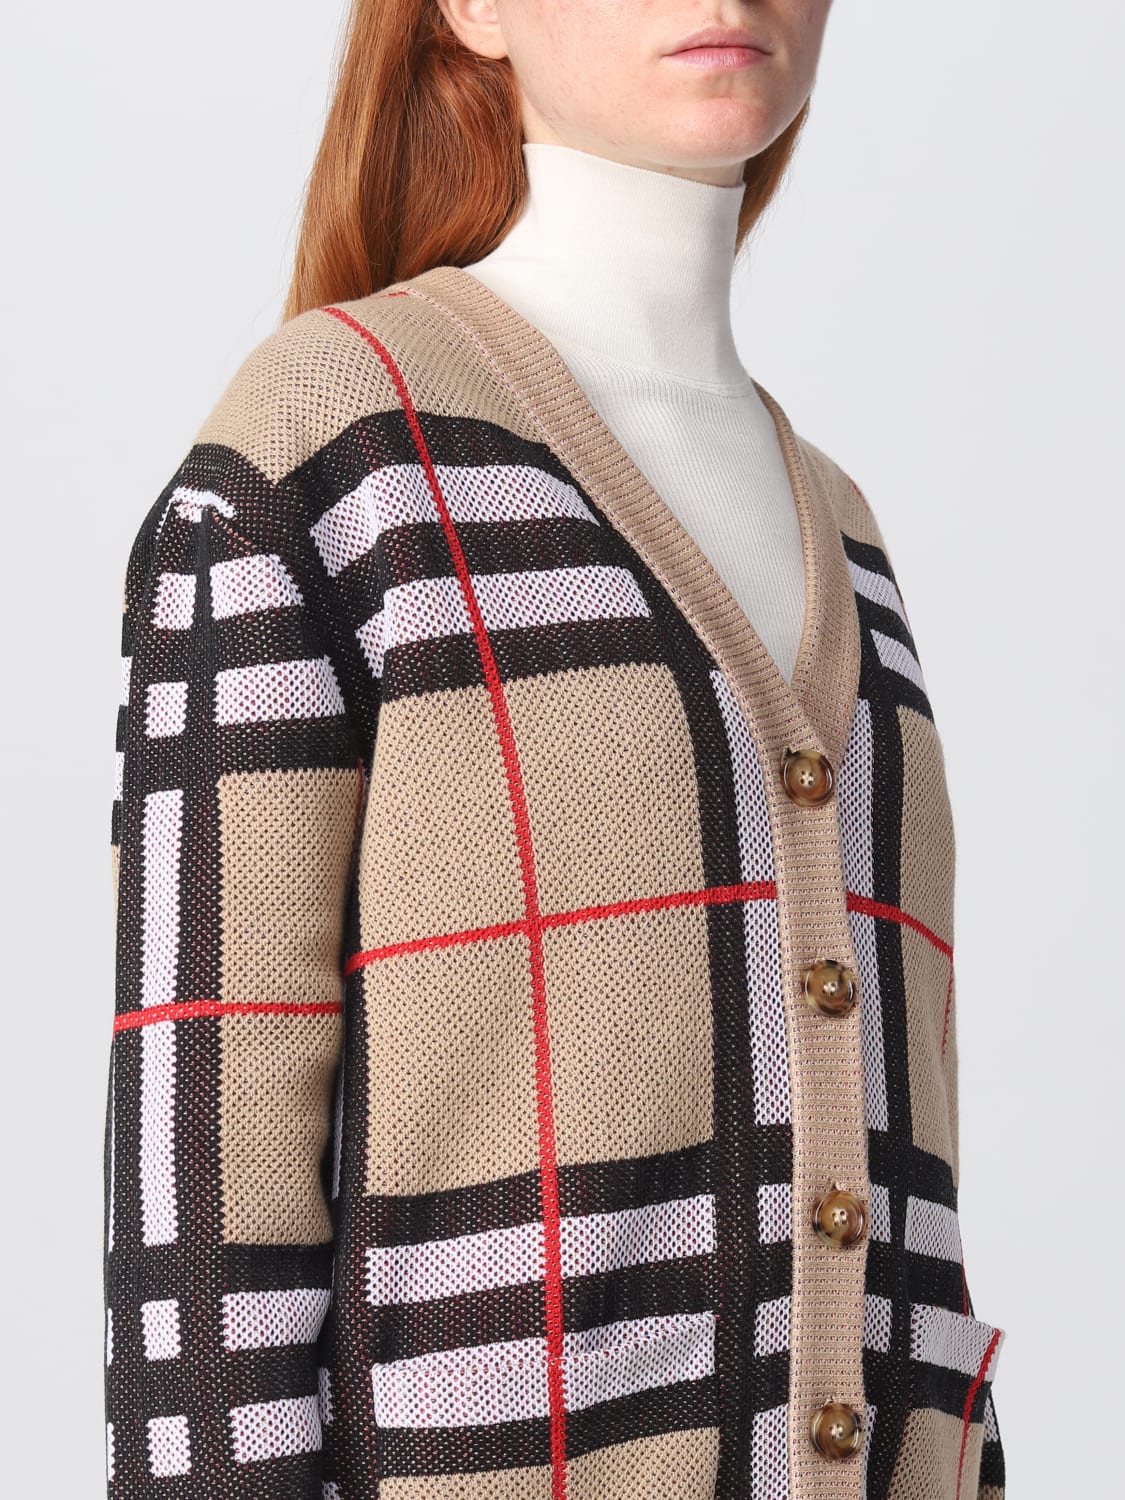 Argyle Wool Sweater in Pear - Women